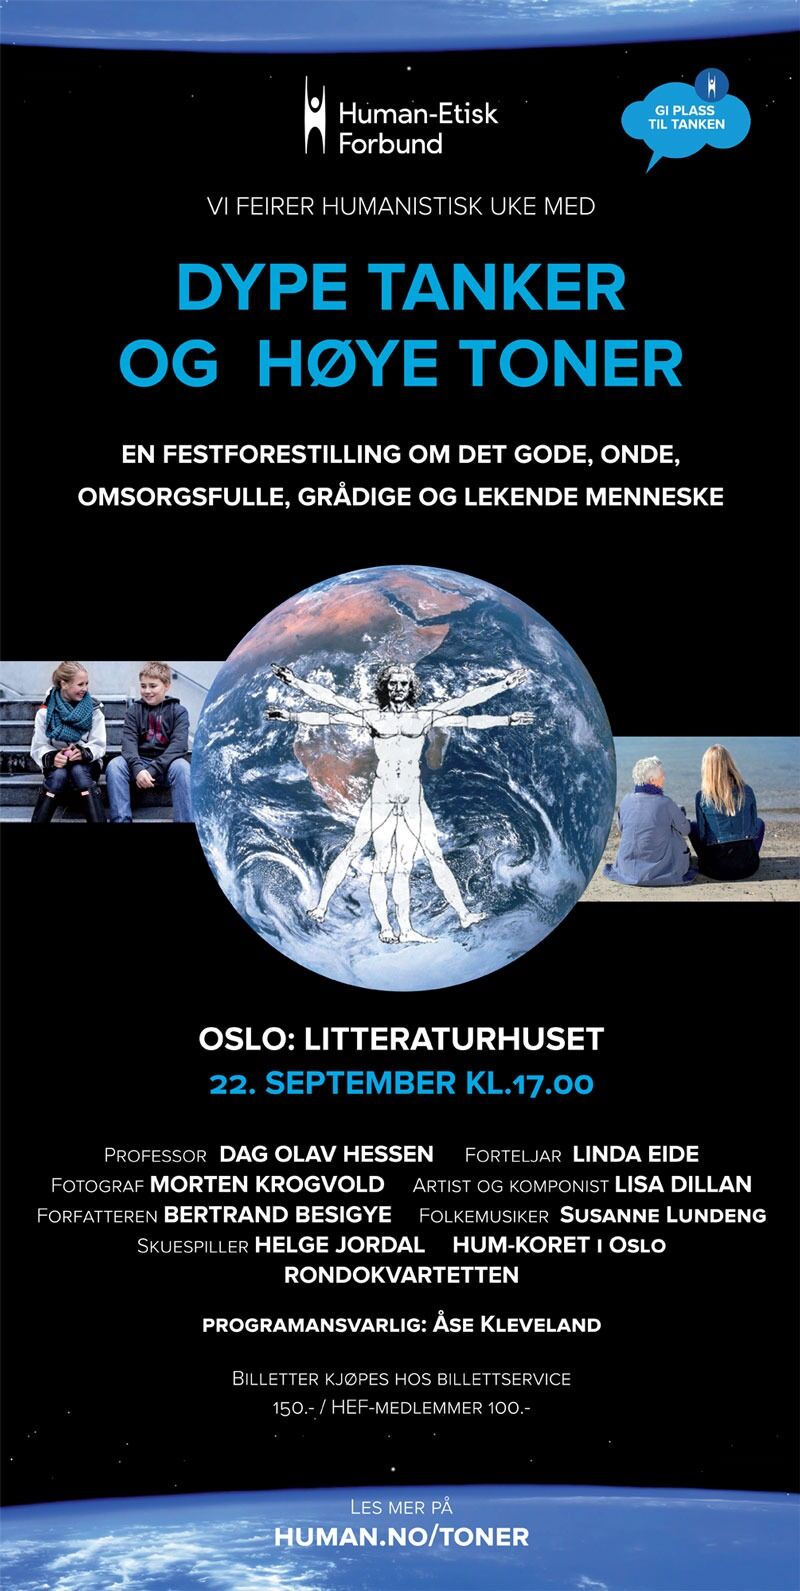 Programmet for festforestillingen i Oslo 22. september.